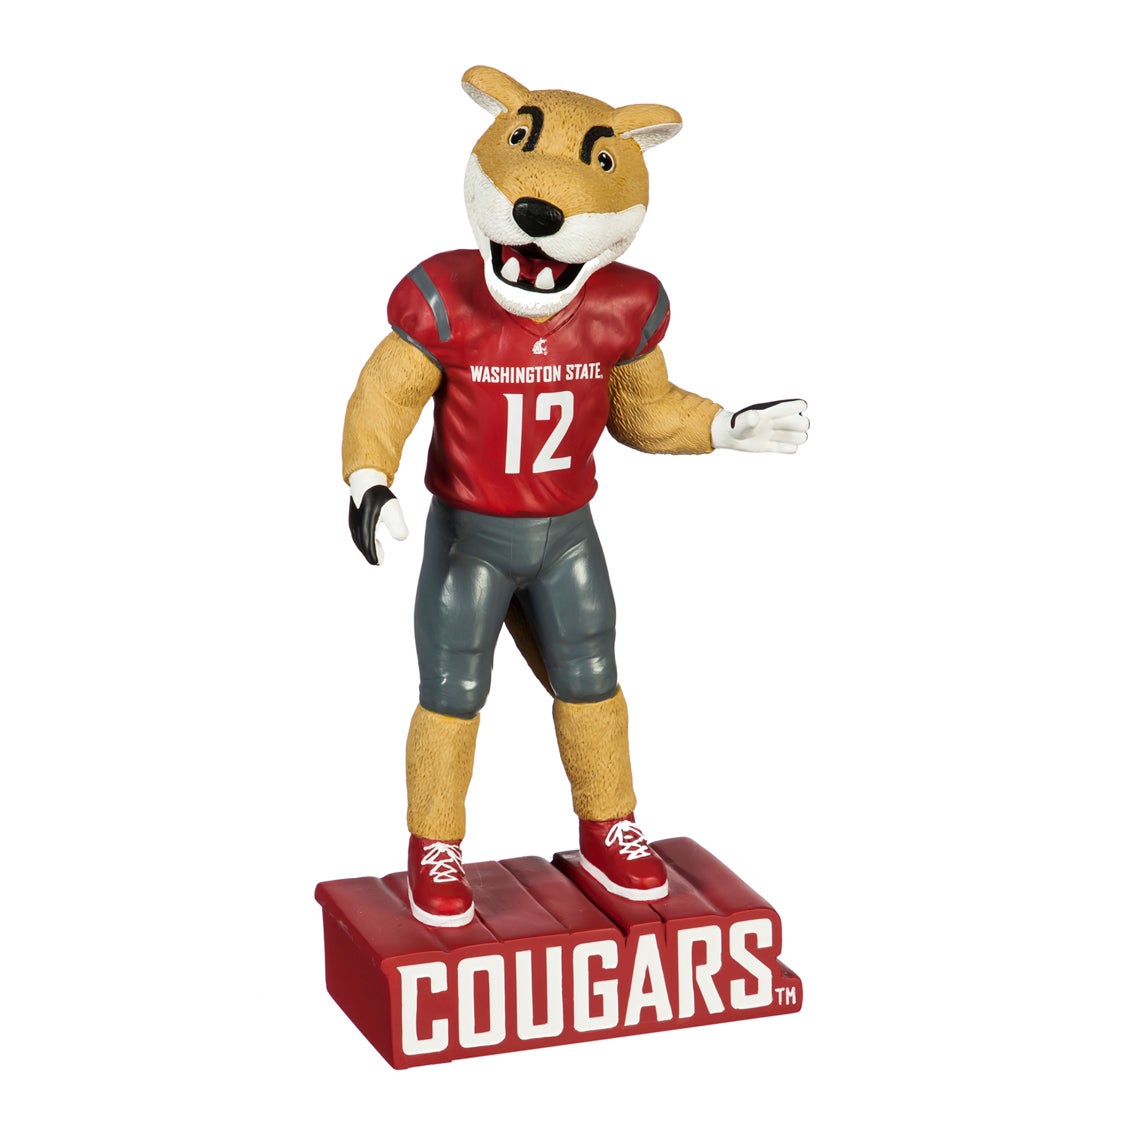 Washington State University Mascot Statue